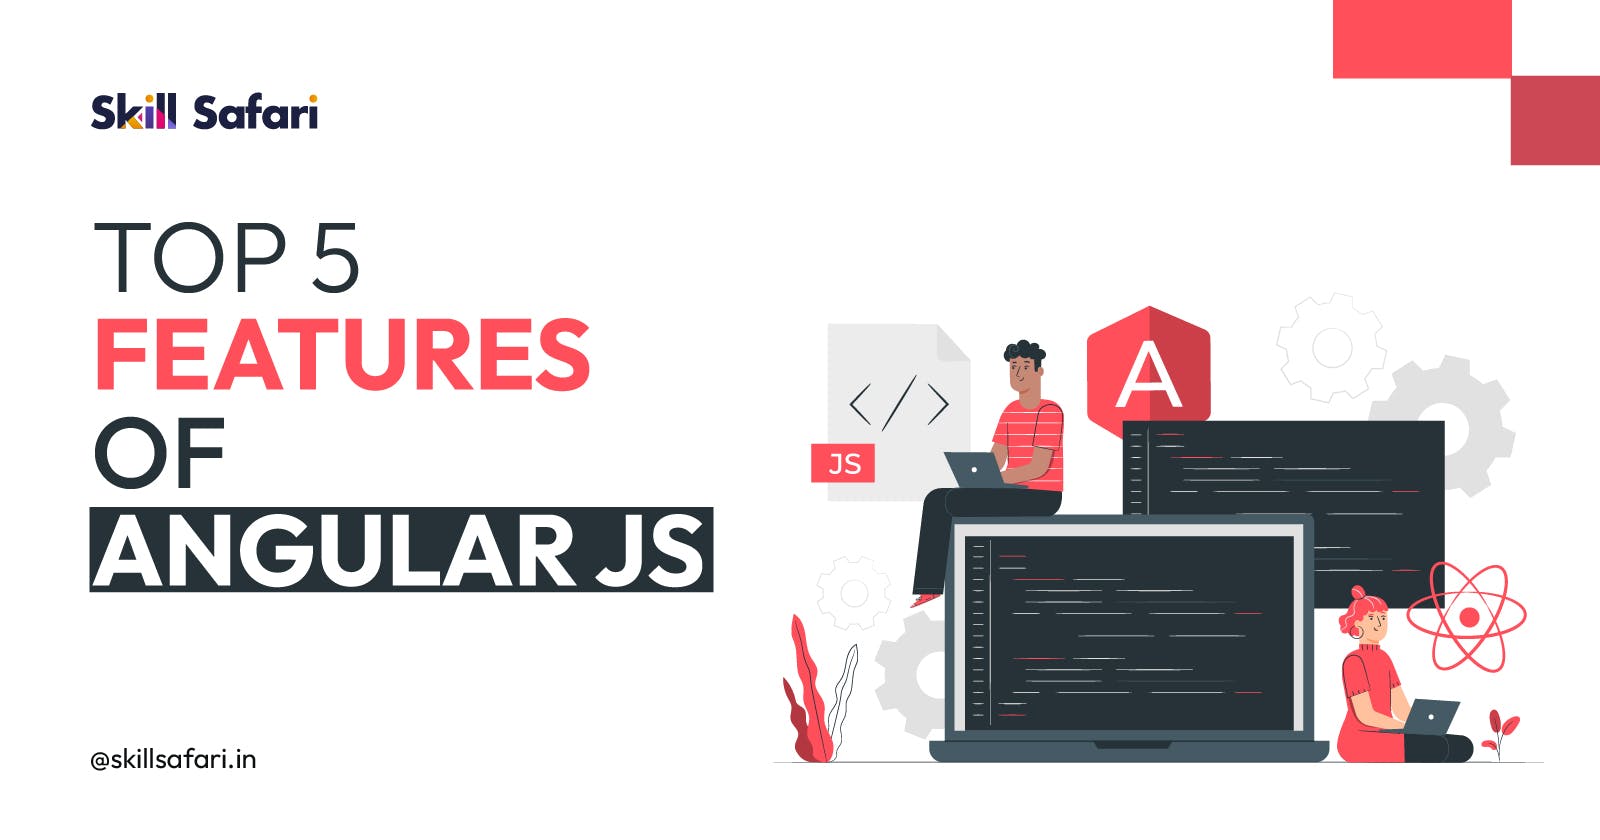 Top 5 Features of Angular js